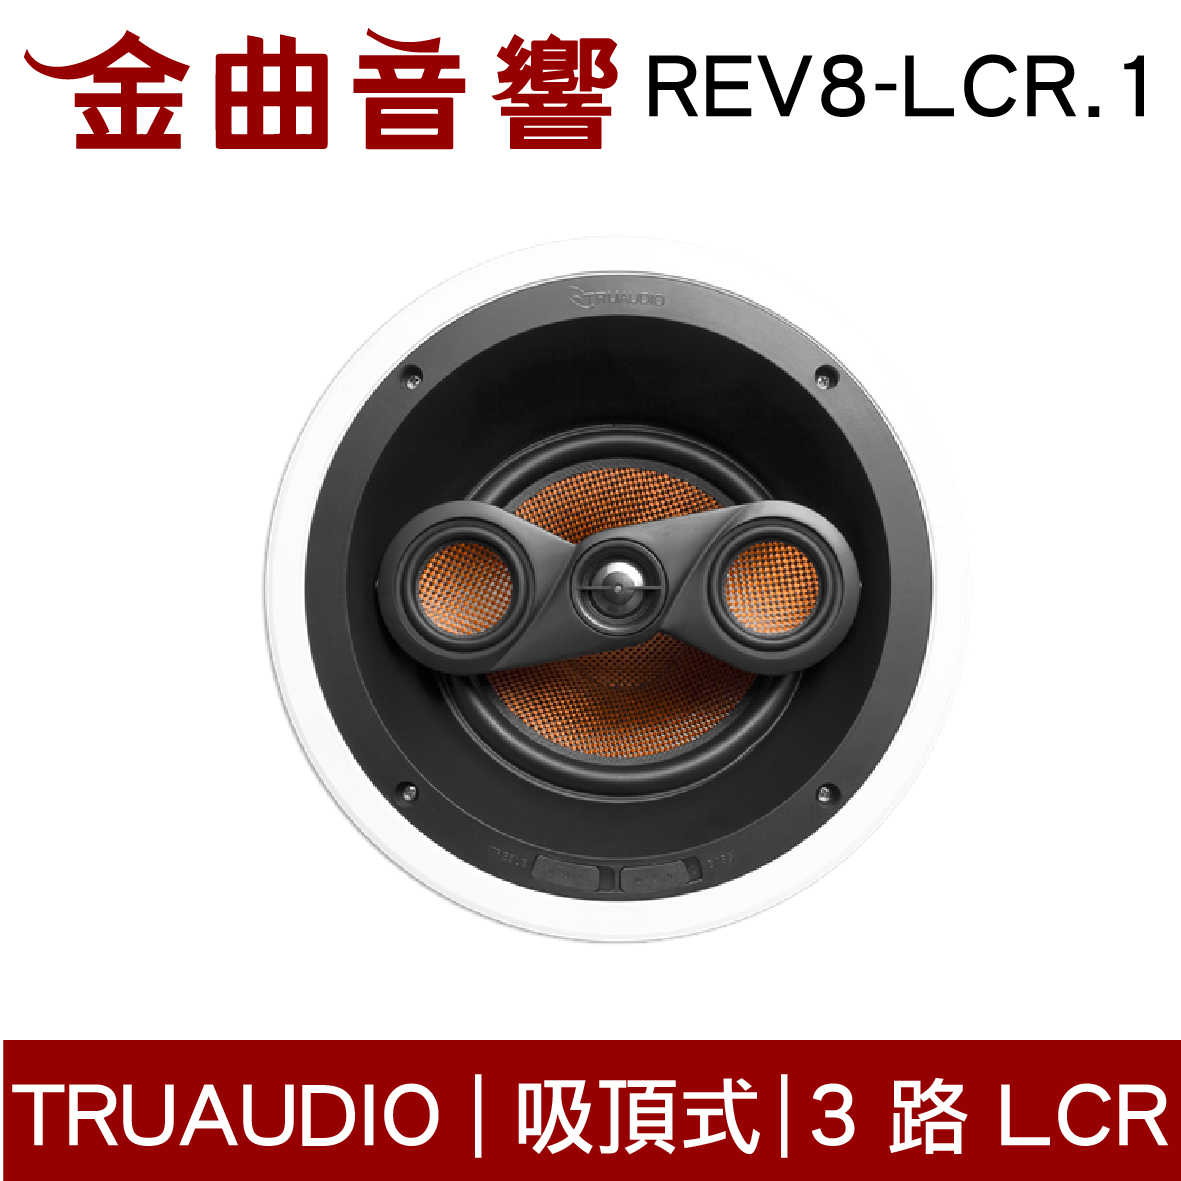 Truaudio REV8-LCR.1 吸頂式 家庭影院 編織碳纖維 揚聲器 | 金曲音響